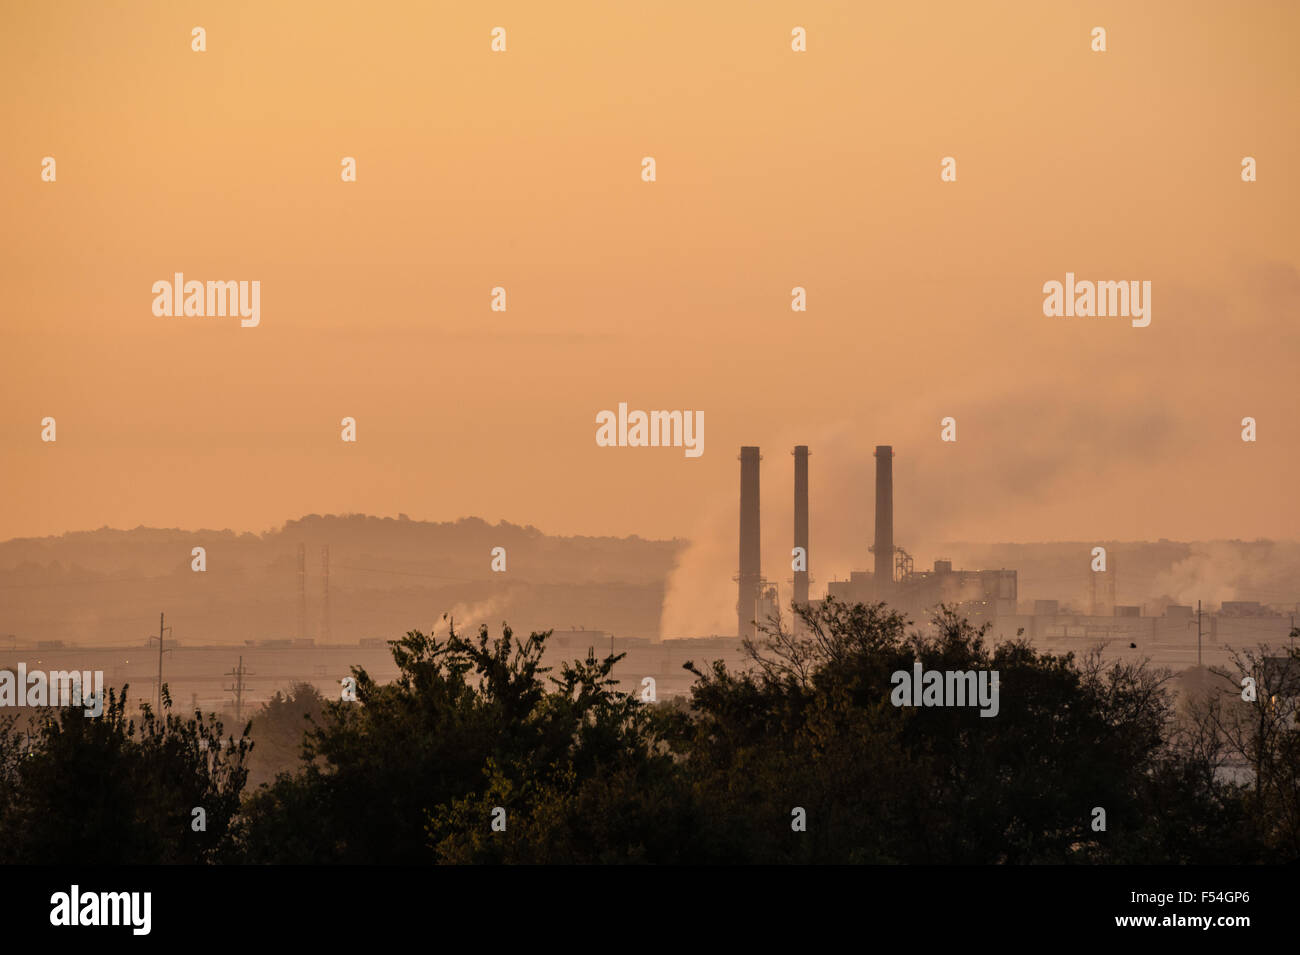 Le pile di fumo della centrale elettrica OG+e Muskogee sorgono contro un cielo nebbioso all'alba a Fort Gibson, Oklahoma. (USA) Foto Stock